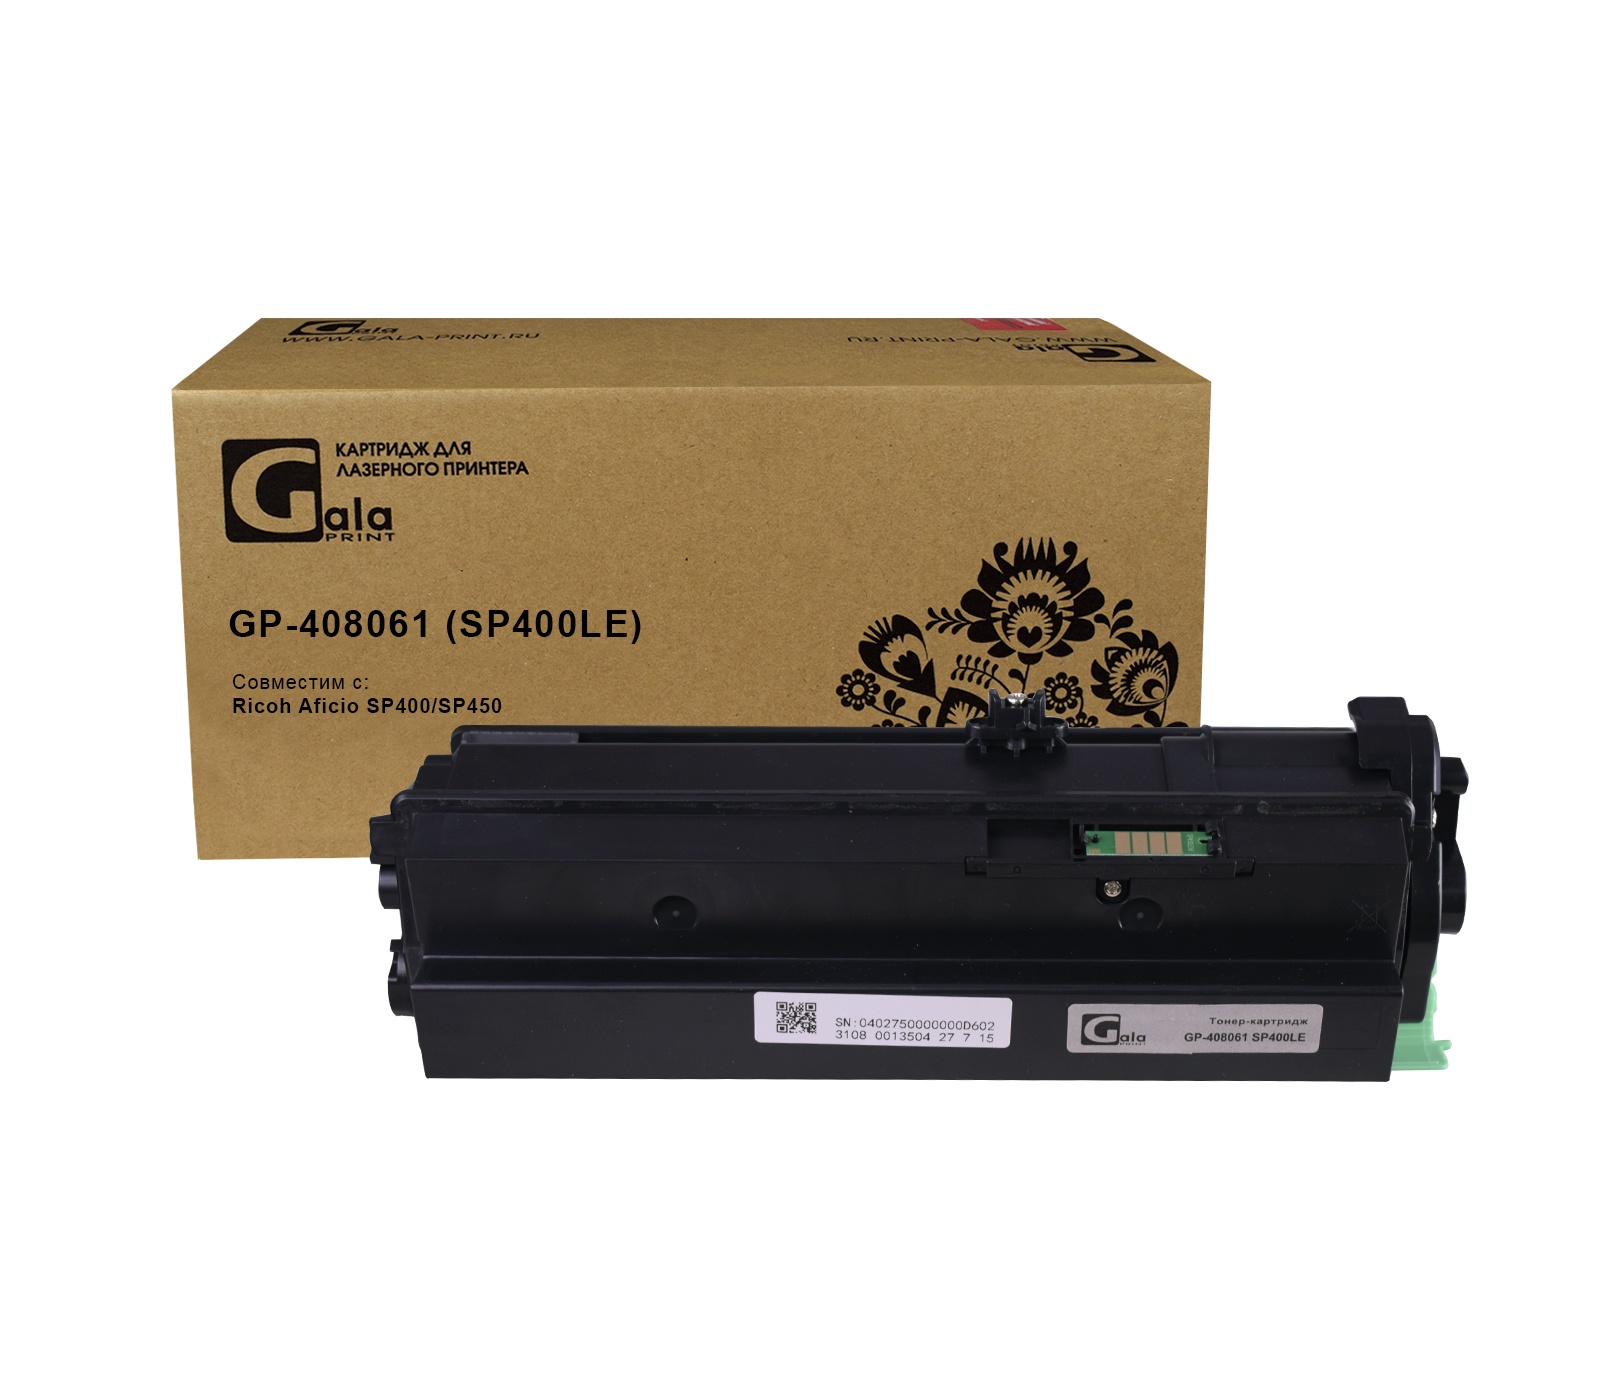 Картридж GP-408061 (SP400LE) для принтеров Ricoh Aficio SP400/SP450 5000 копий GalaPrint